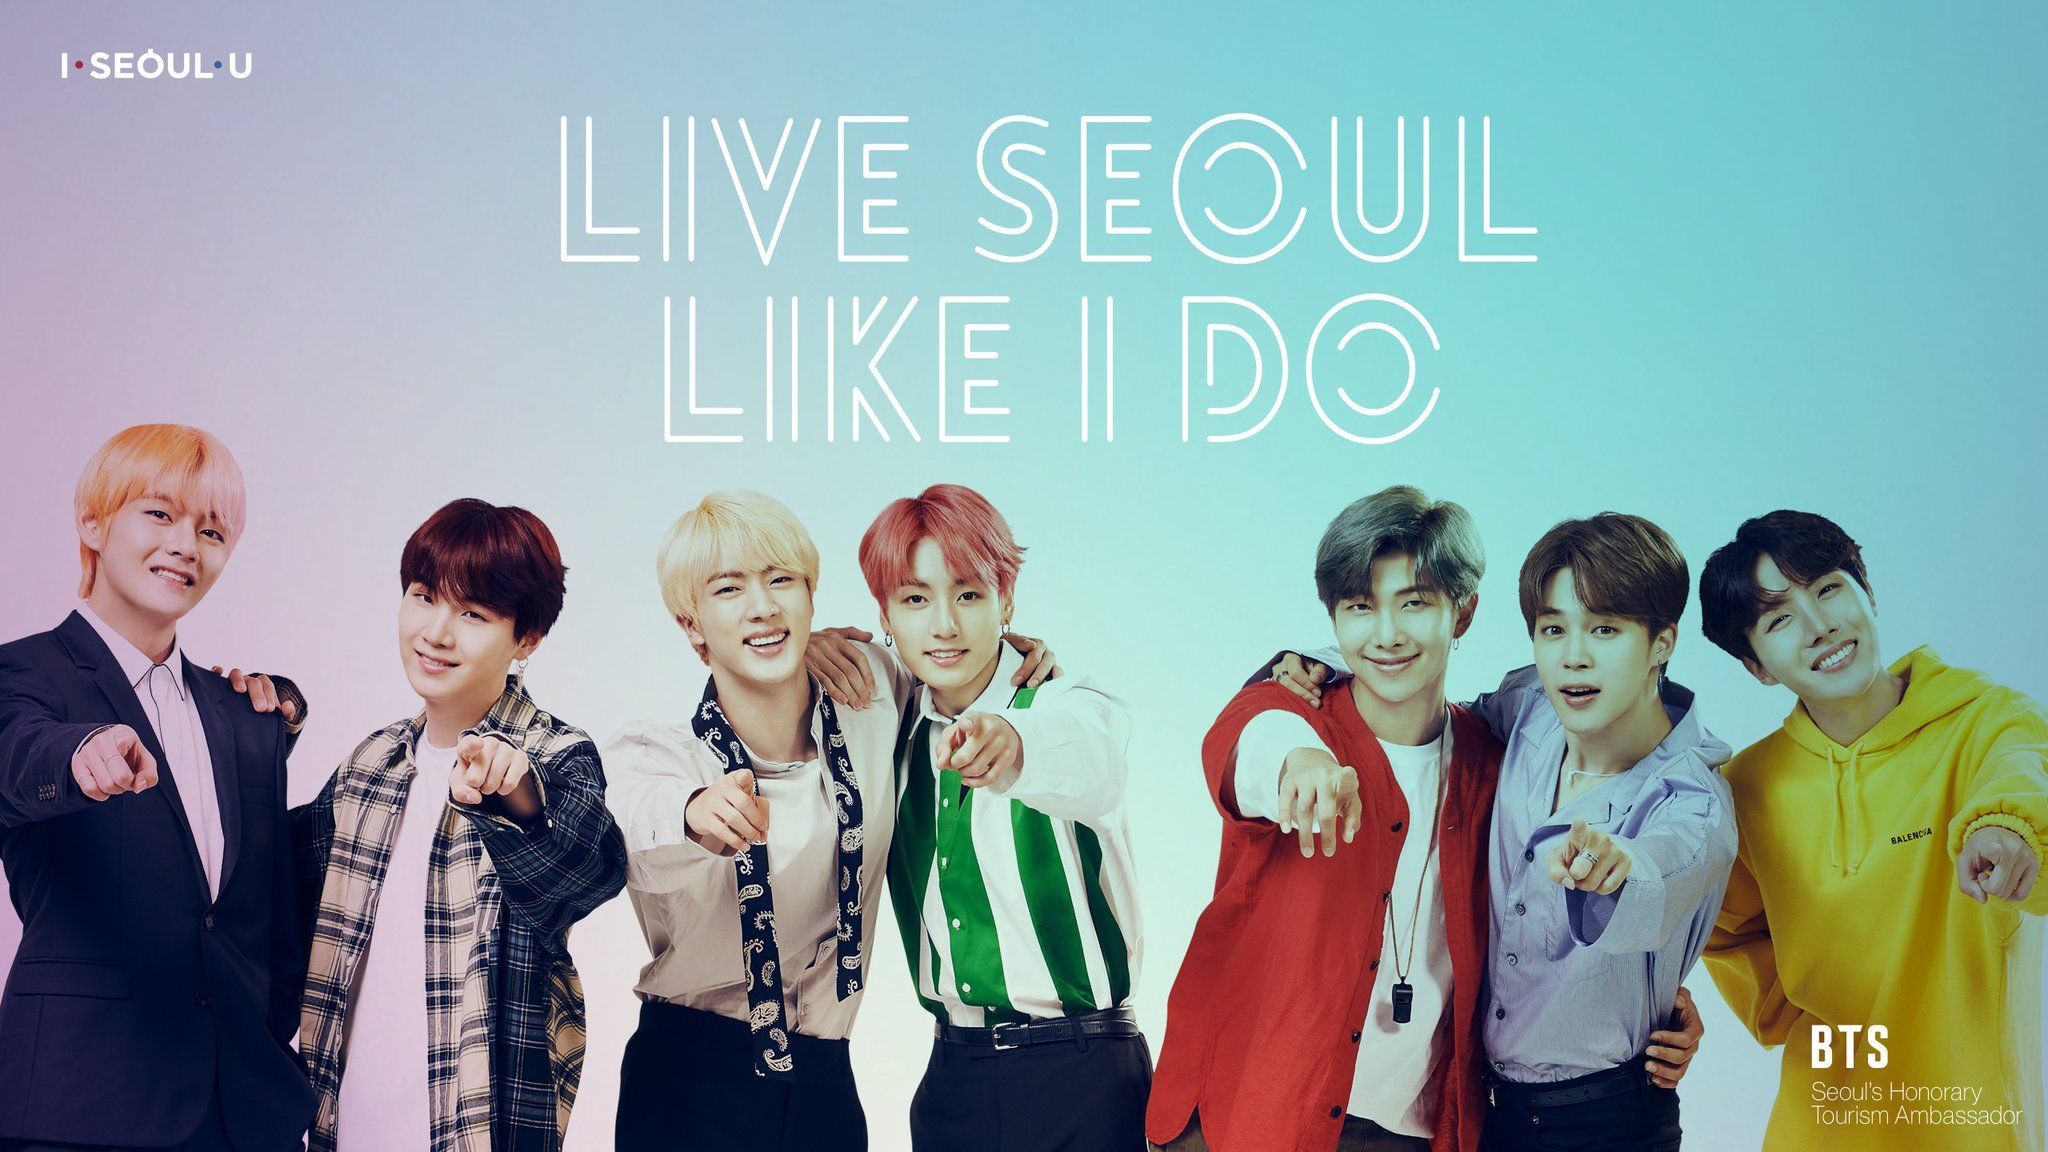 Bts Live Seoul Like I Do